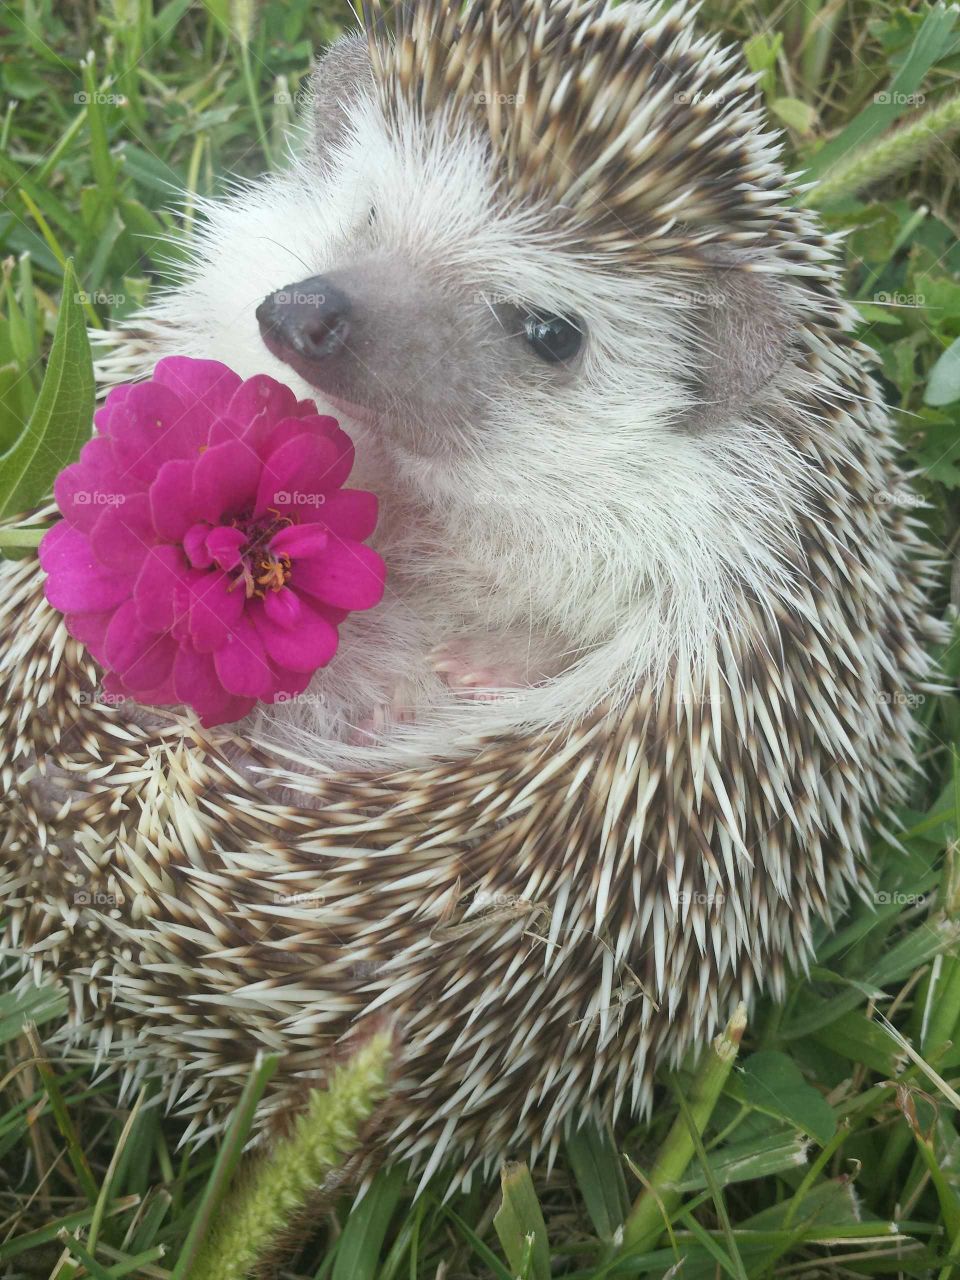 Hedgehog with blooming flower